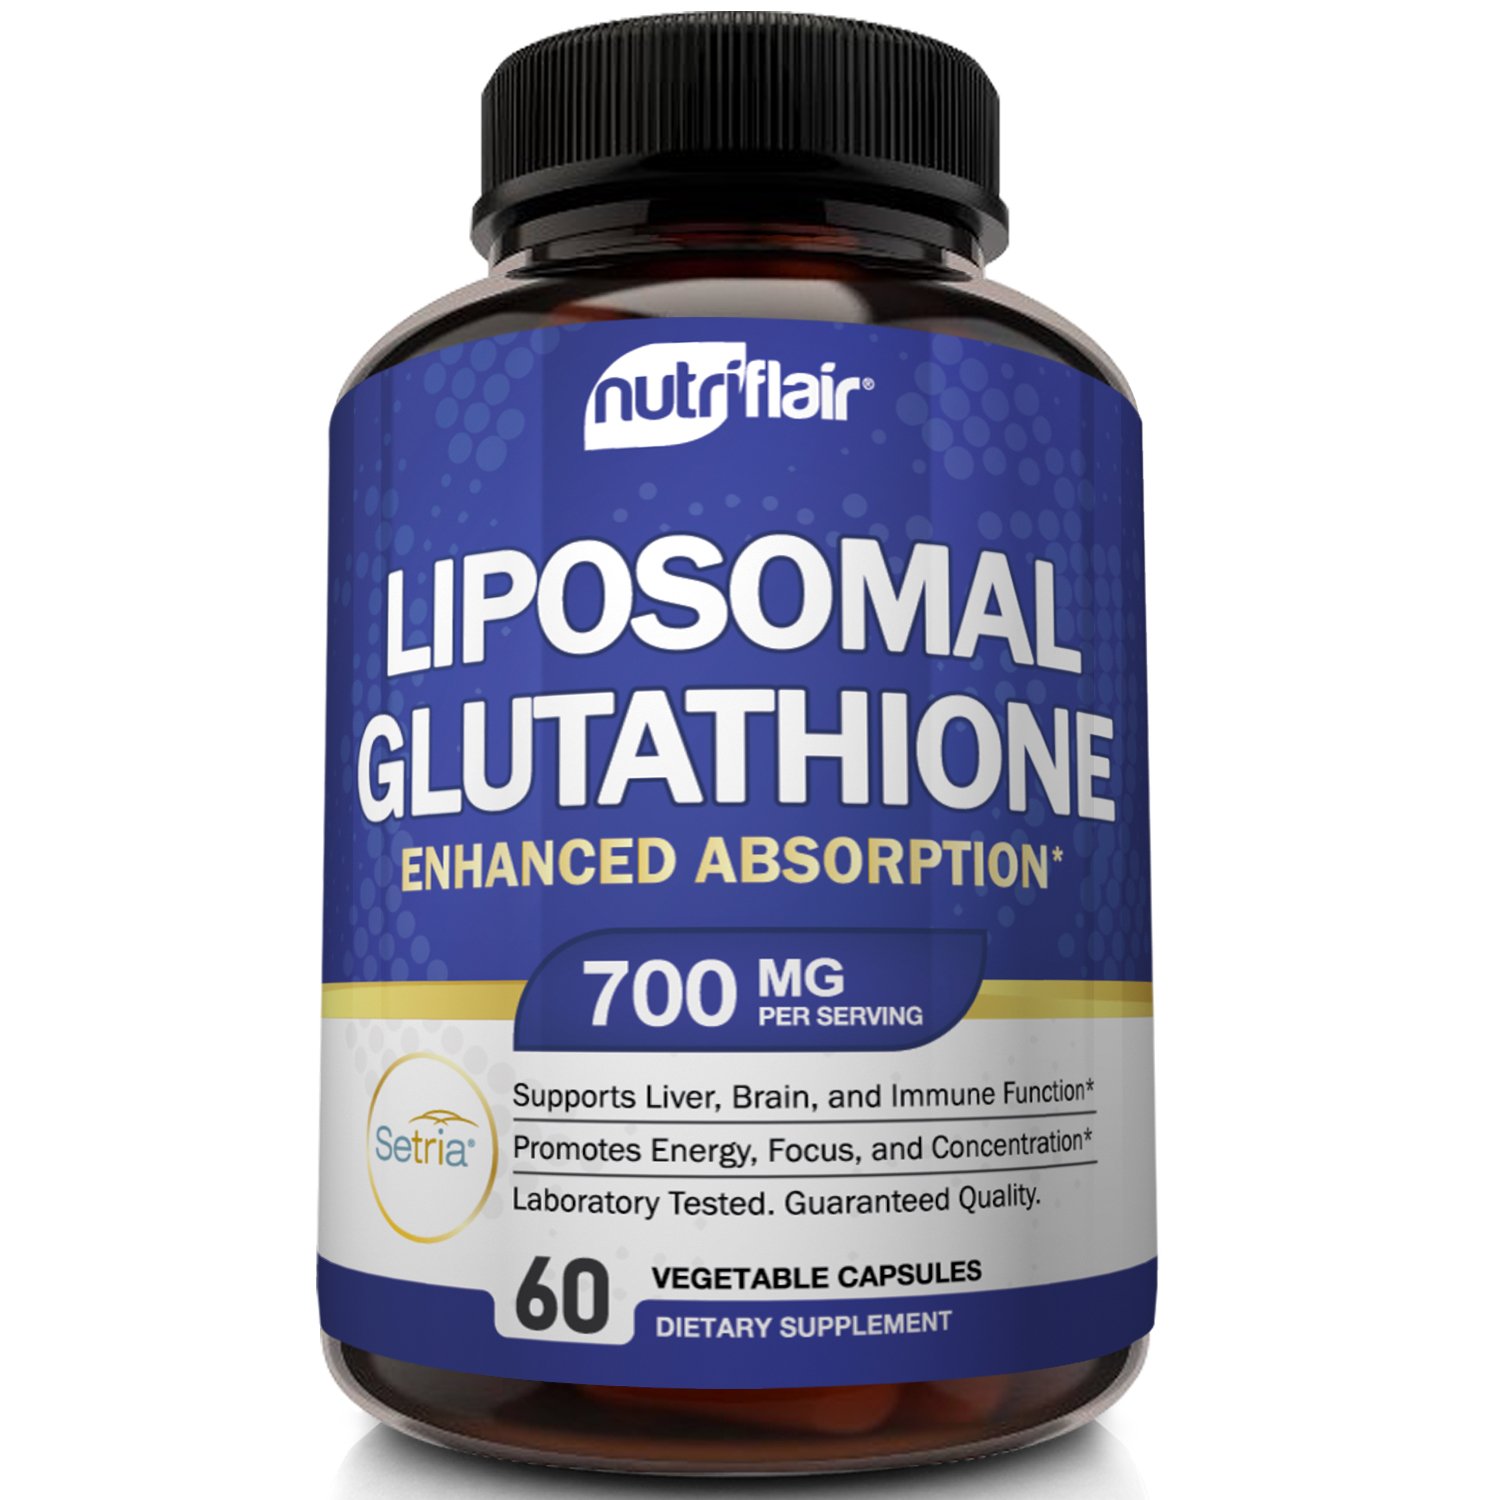 NutriFlair Liposomal Glutathione Supplement Antioxidant Detox Immune Support 60 Vegetable Capsules